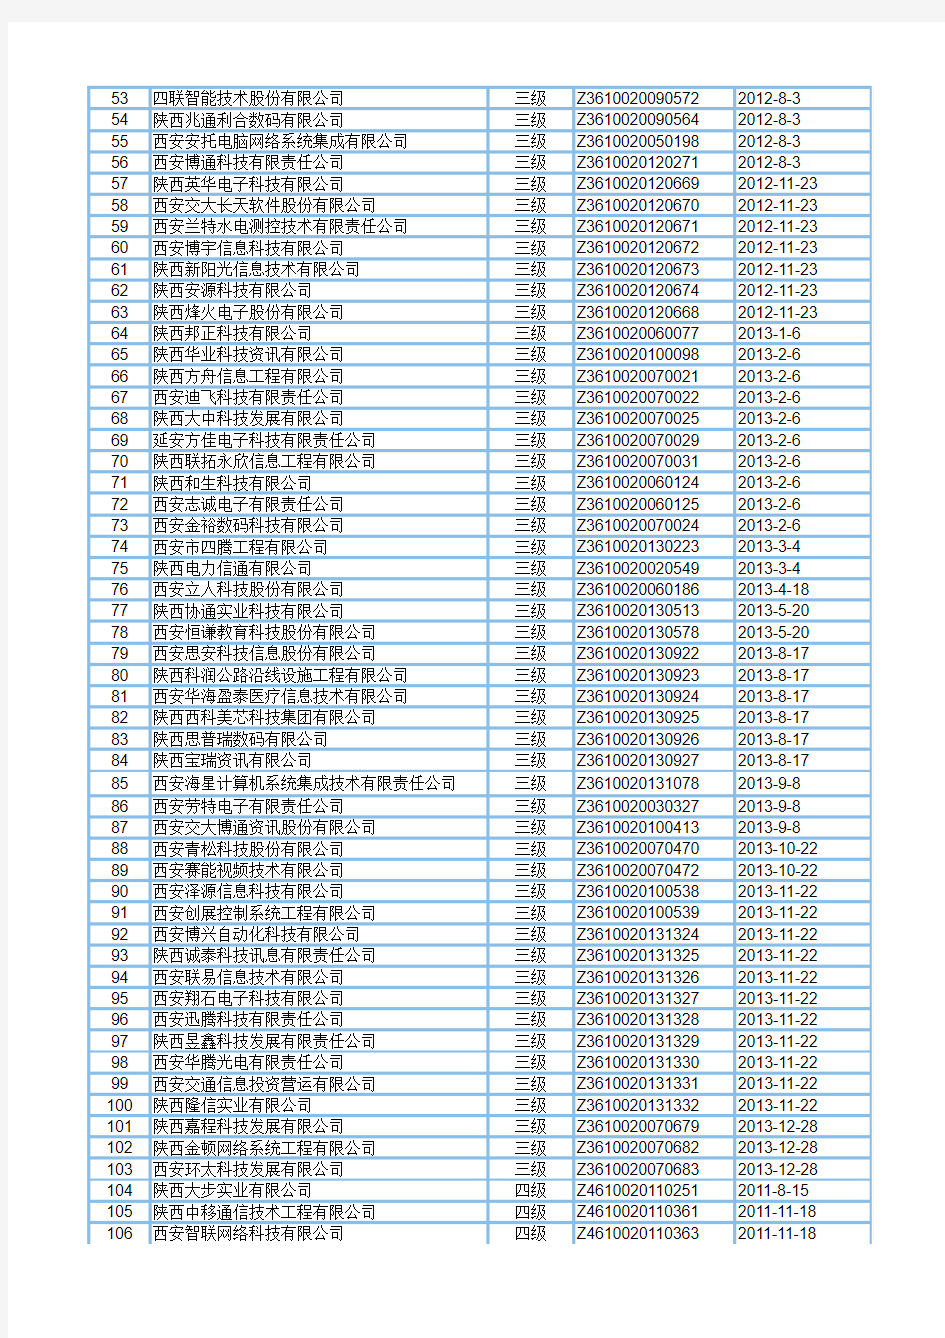 2014年陕西省系统集成商名单